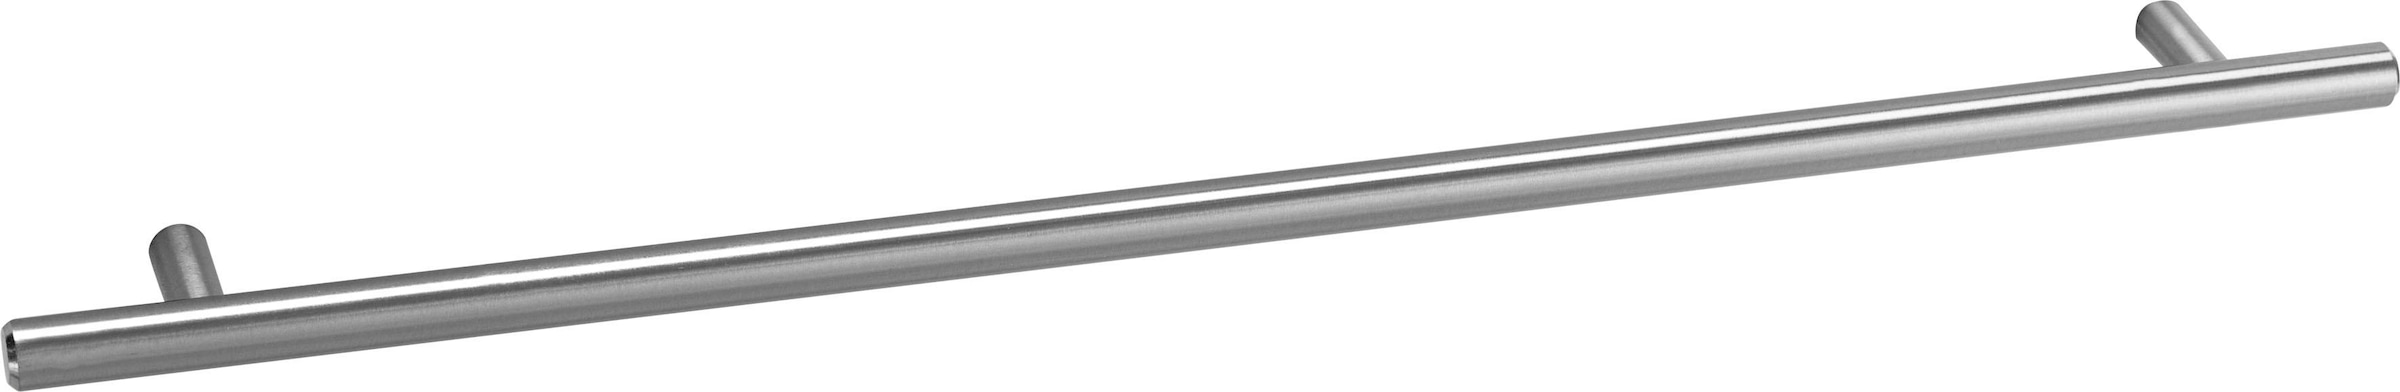 OPTIFIT Unterschrank »Bern«, 60 cm breit, mit 1 Tür mit höhenverstellbaren  Füßen, mit Metallgriff online kaufen